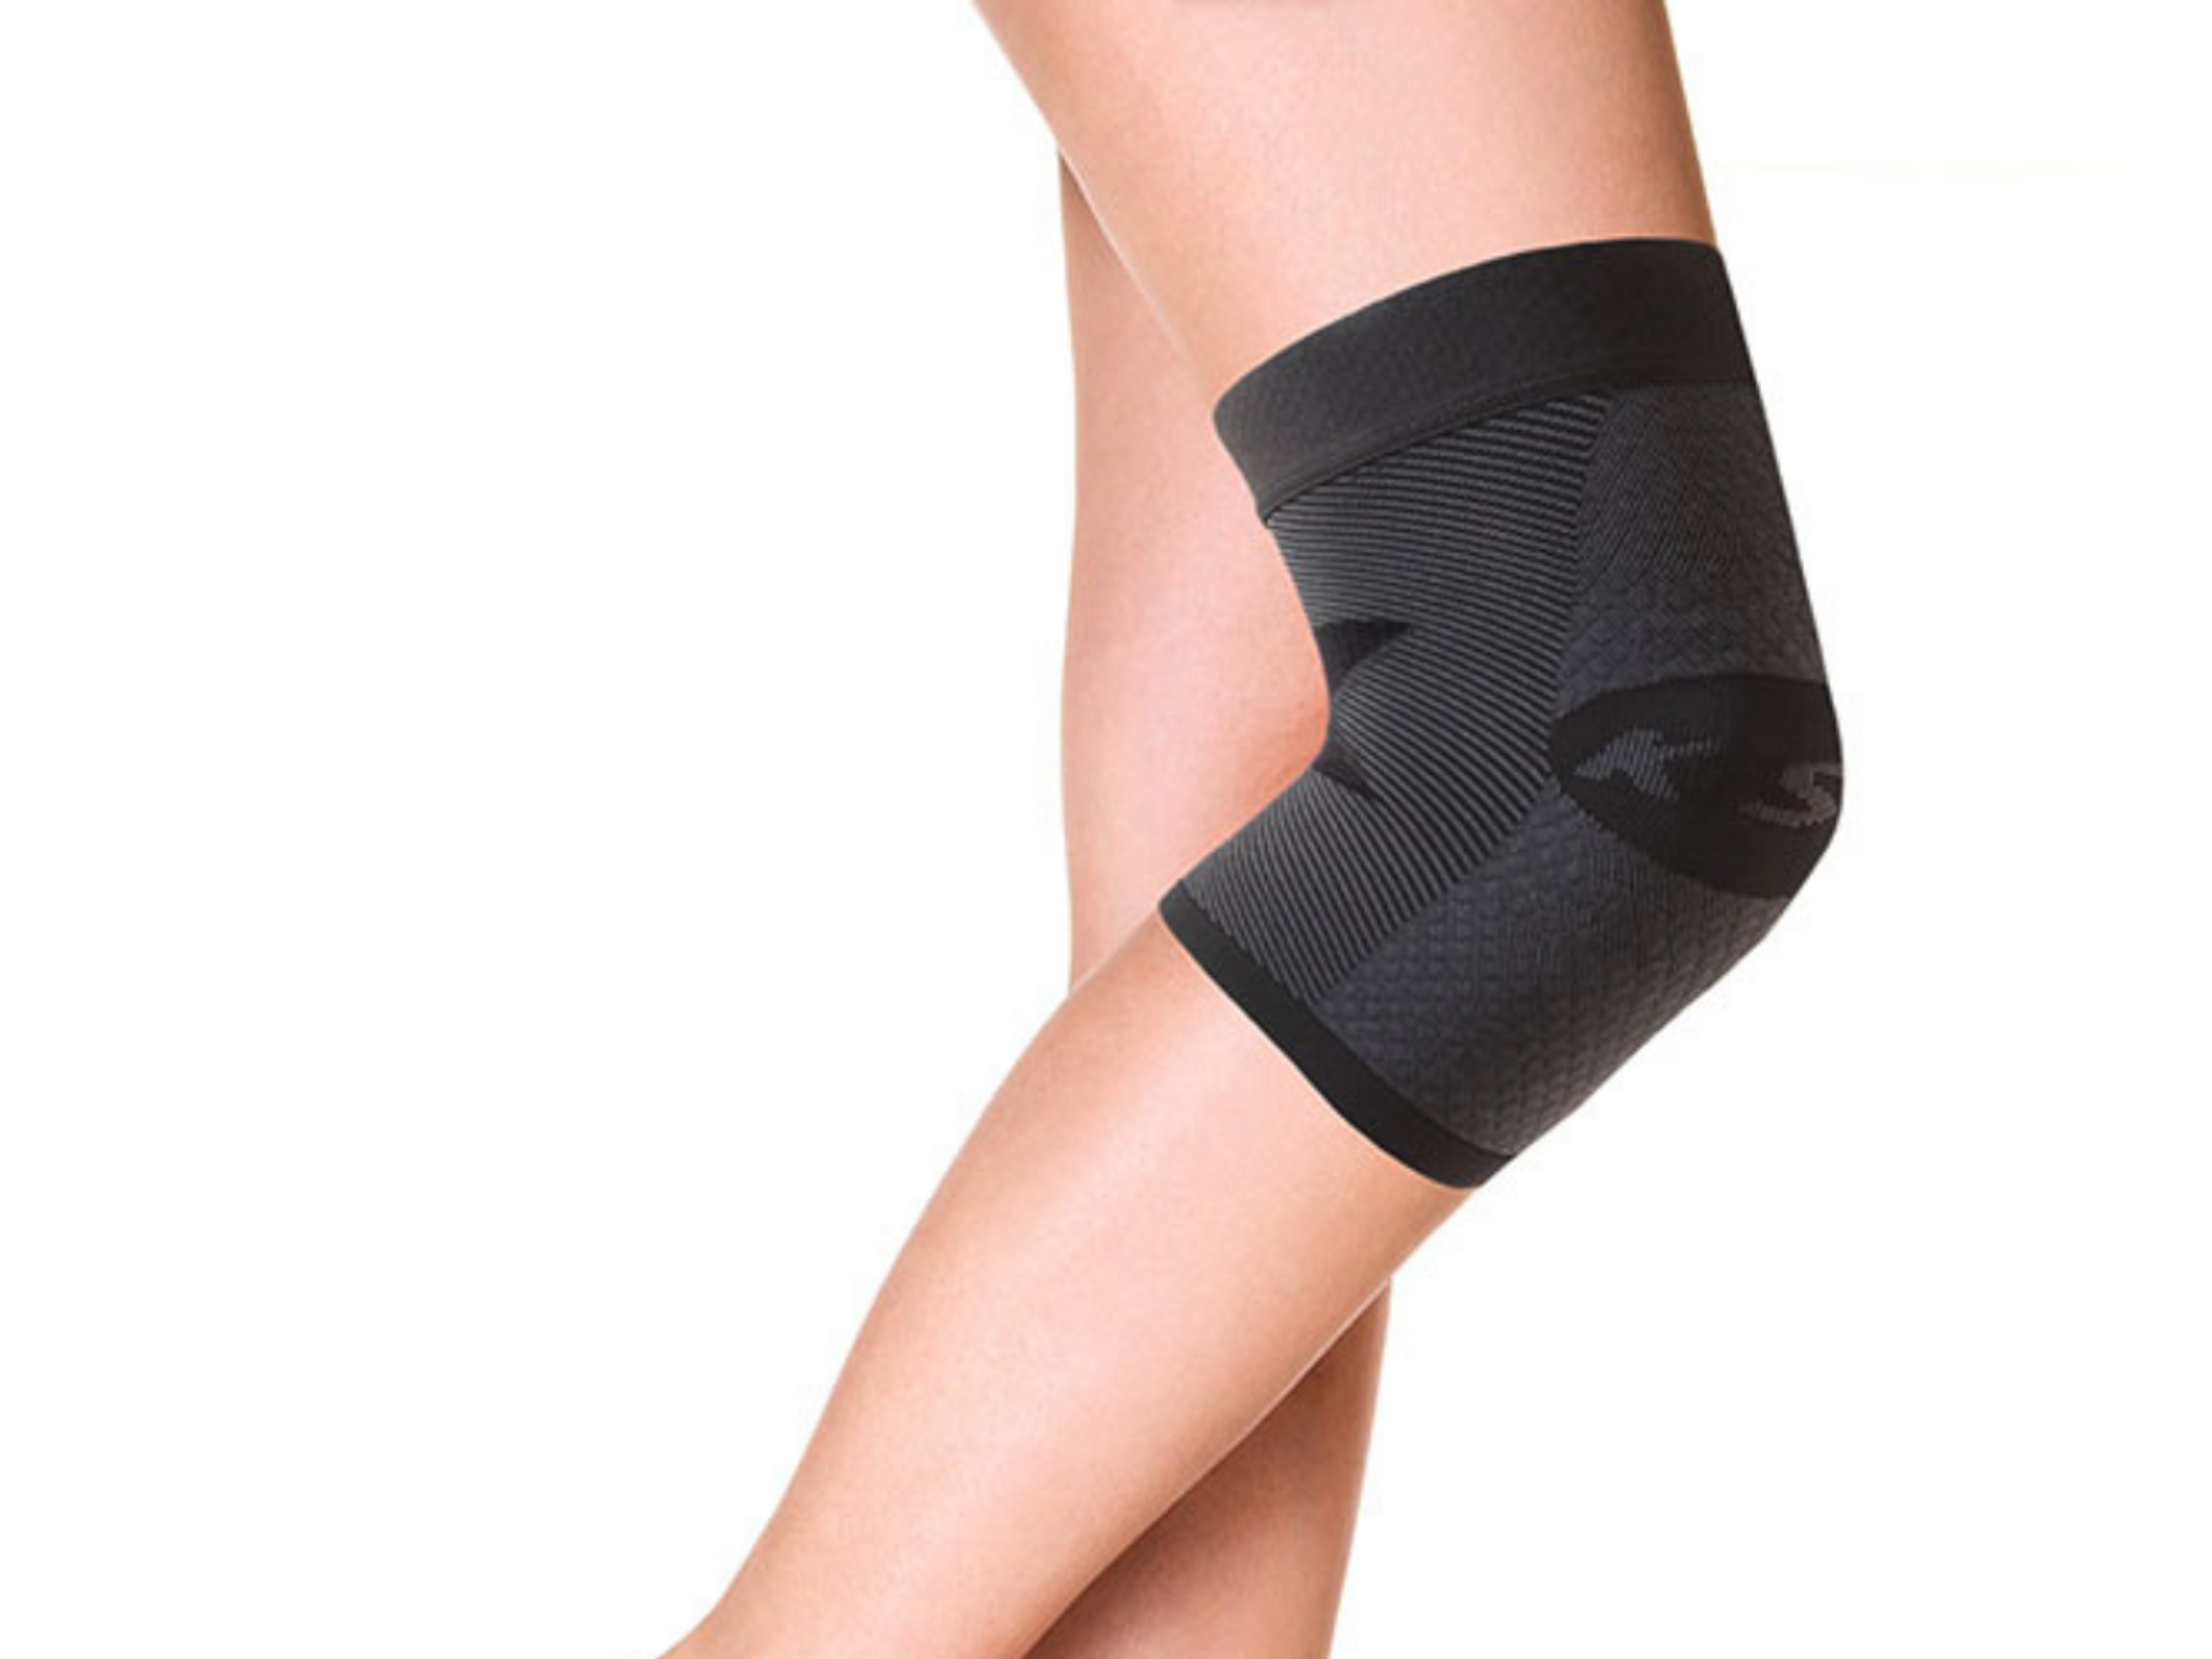 Las mangas para la rodilla pueden ayudar a mejorar la propiocepción tras una lesión en los meniscos